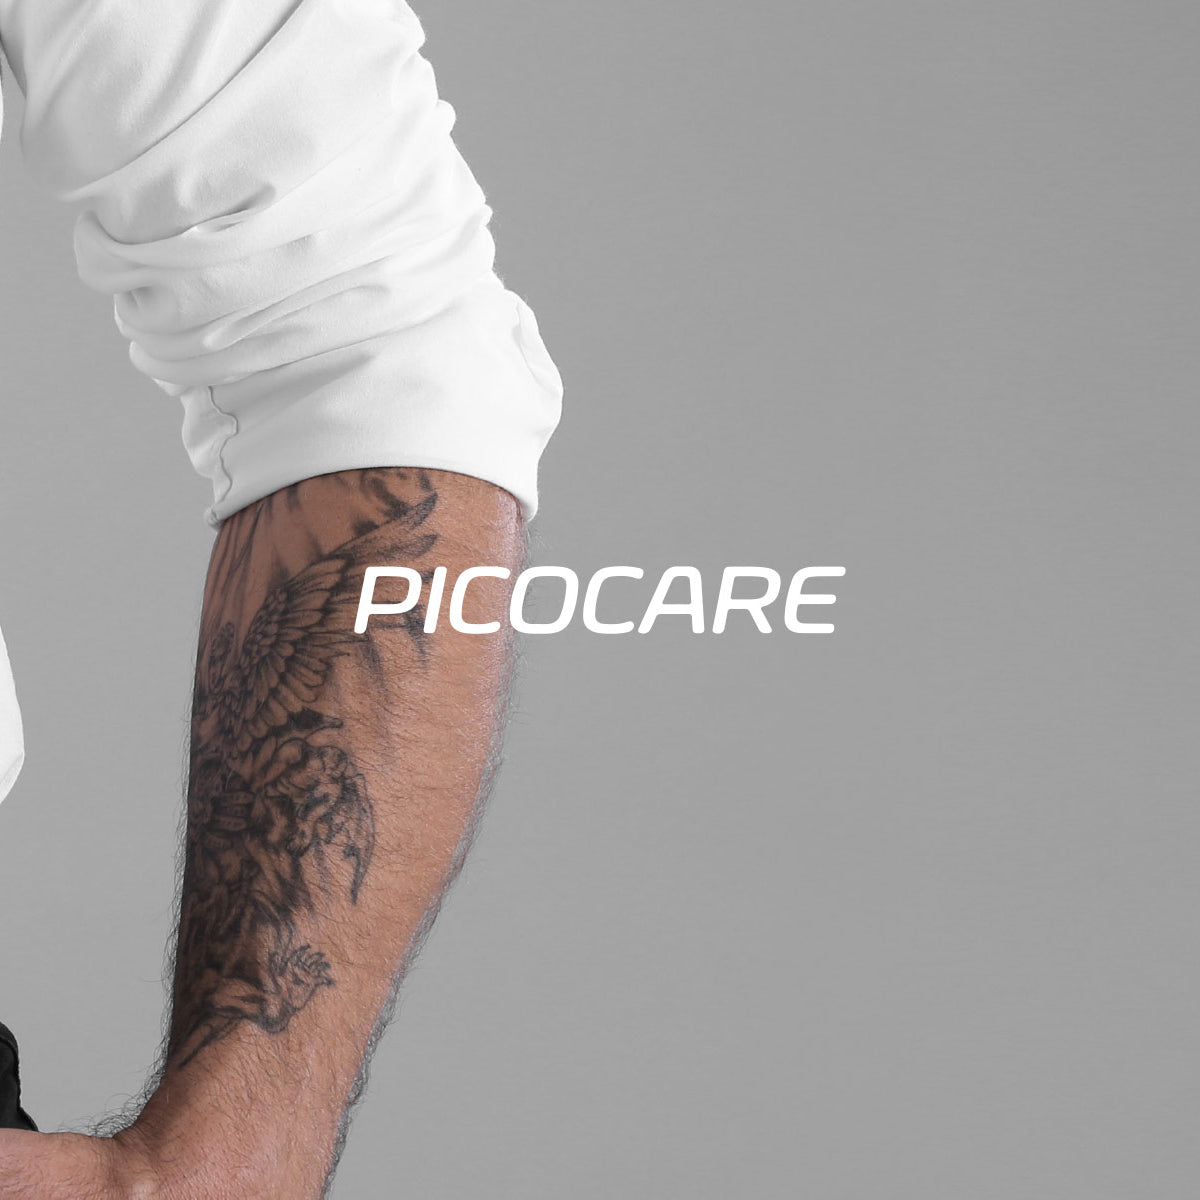 Picolaser, picocare, tattoo removal, pigmentation laser, picosecond laser, picolaser in UK